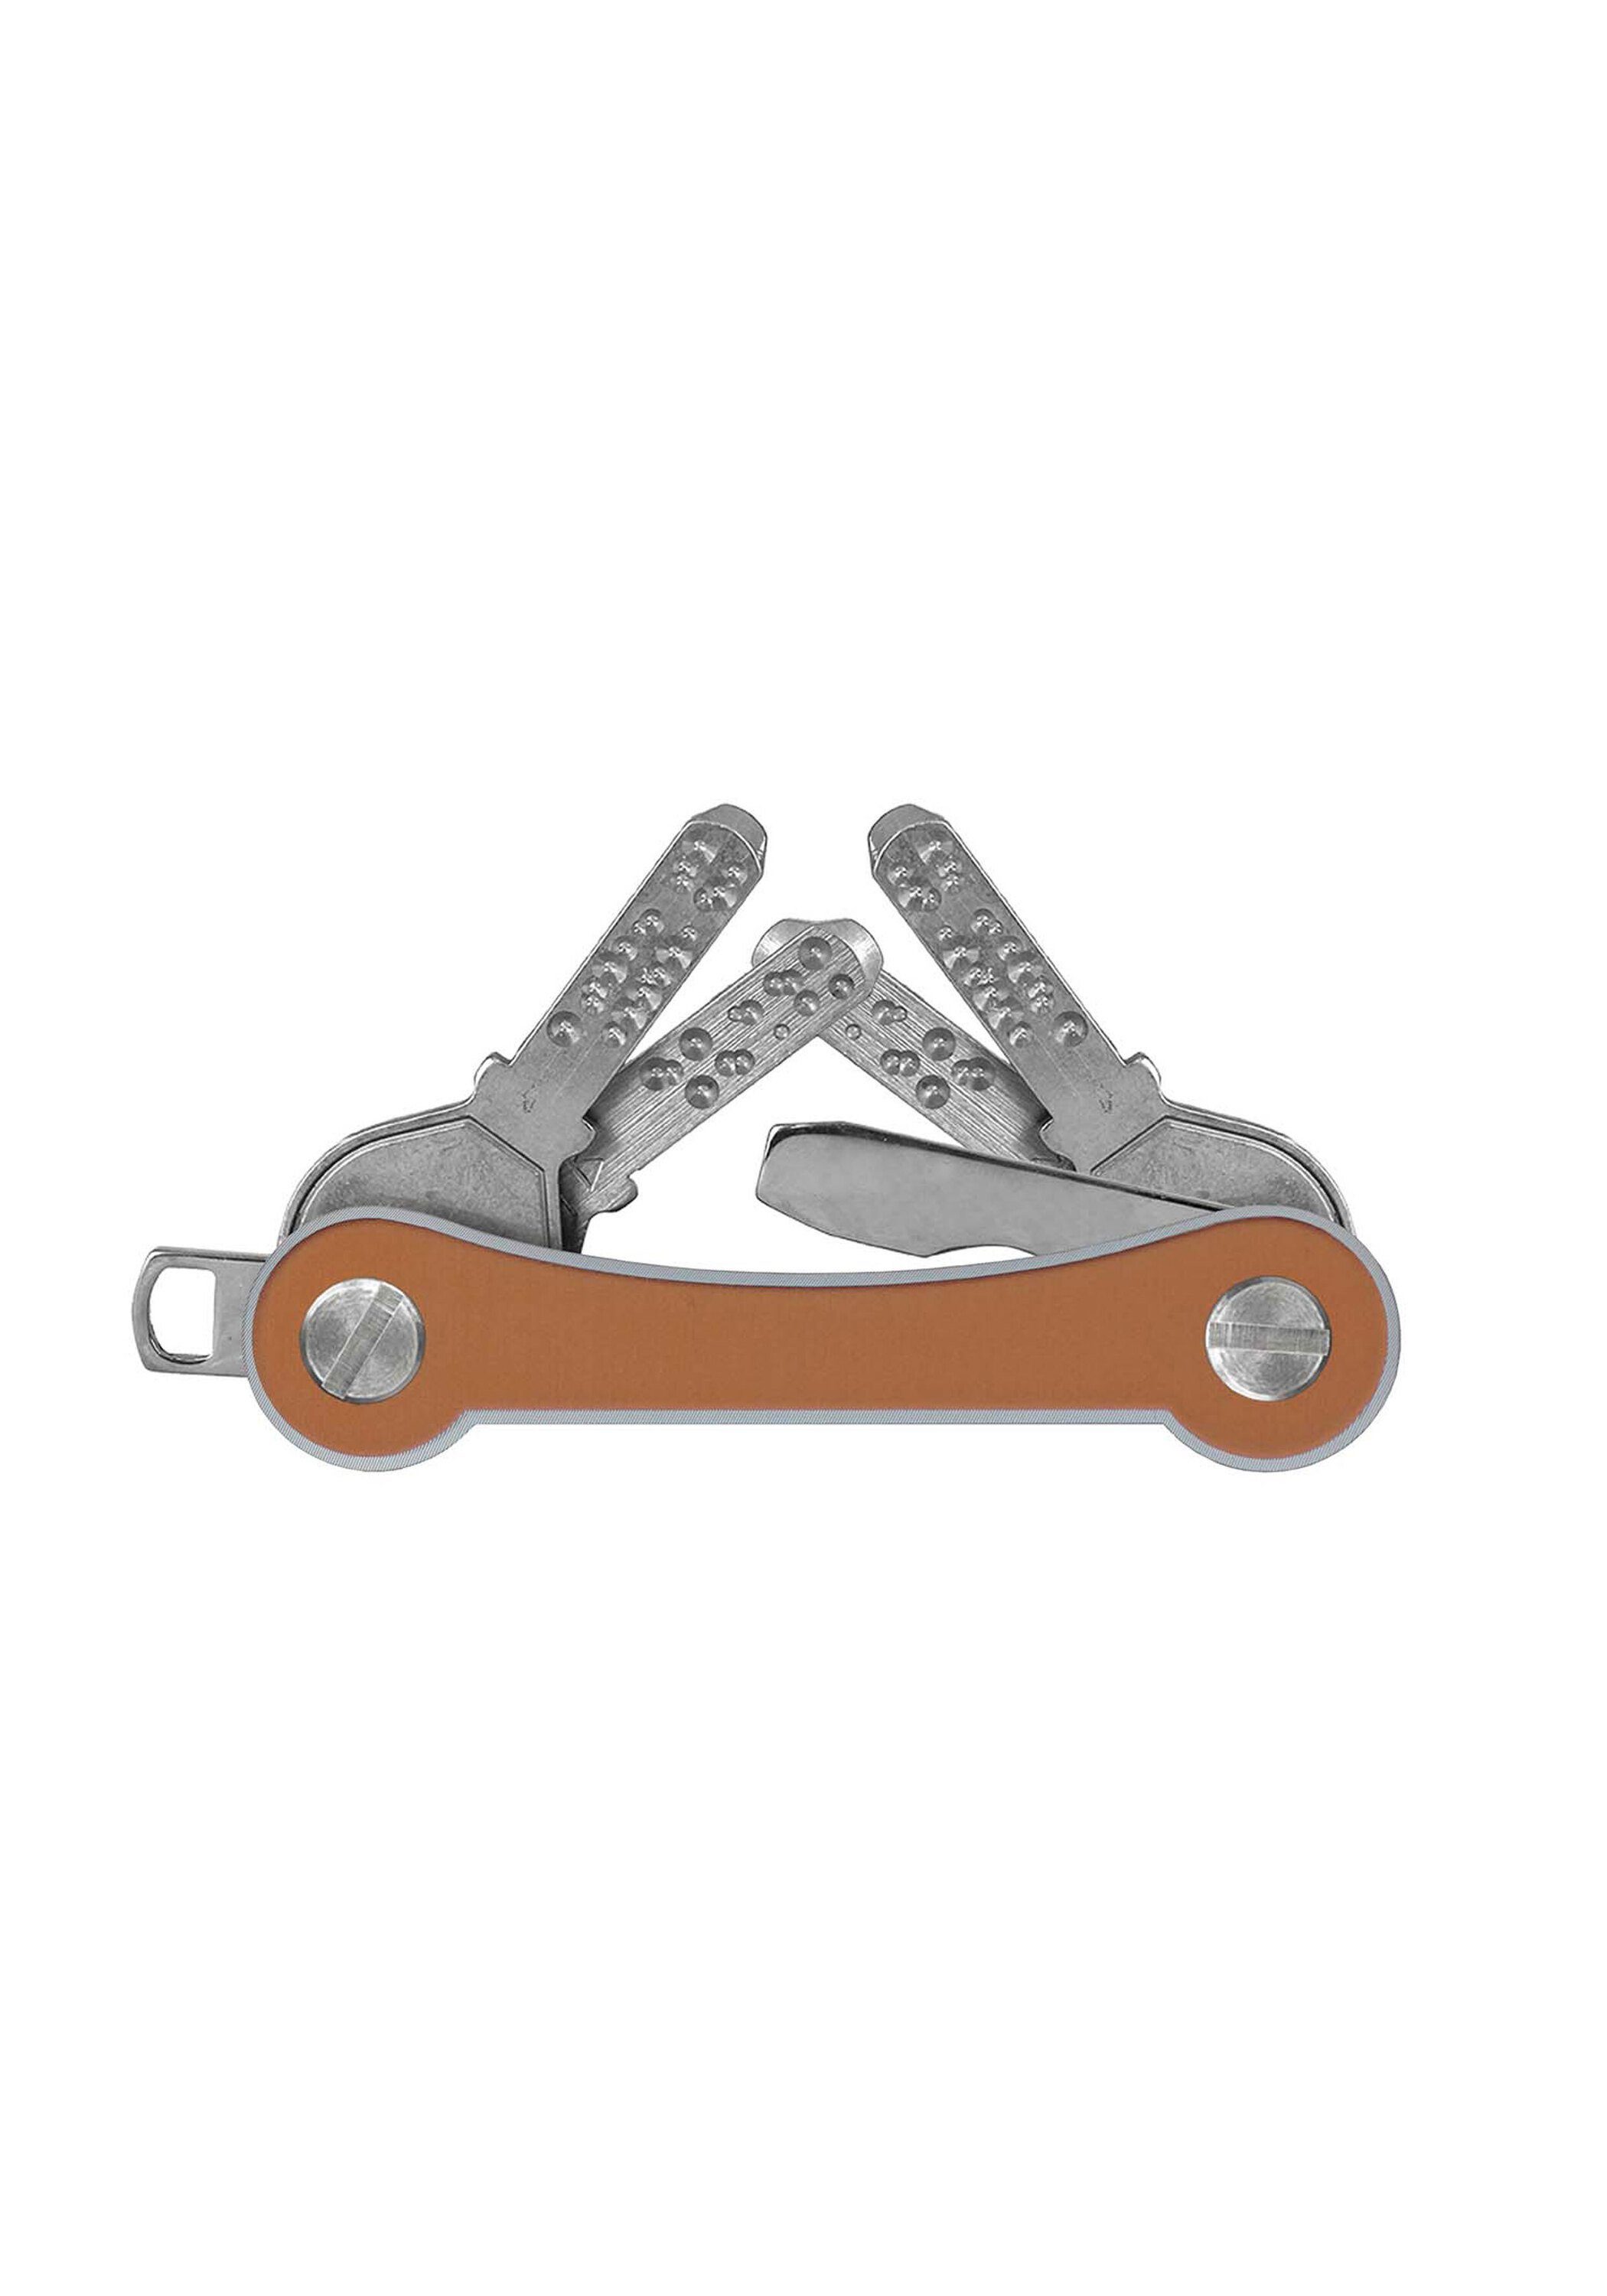 Schlüsselanhänger SWISS keycabins frame, Made Aluminium goldfarben